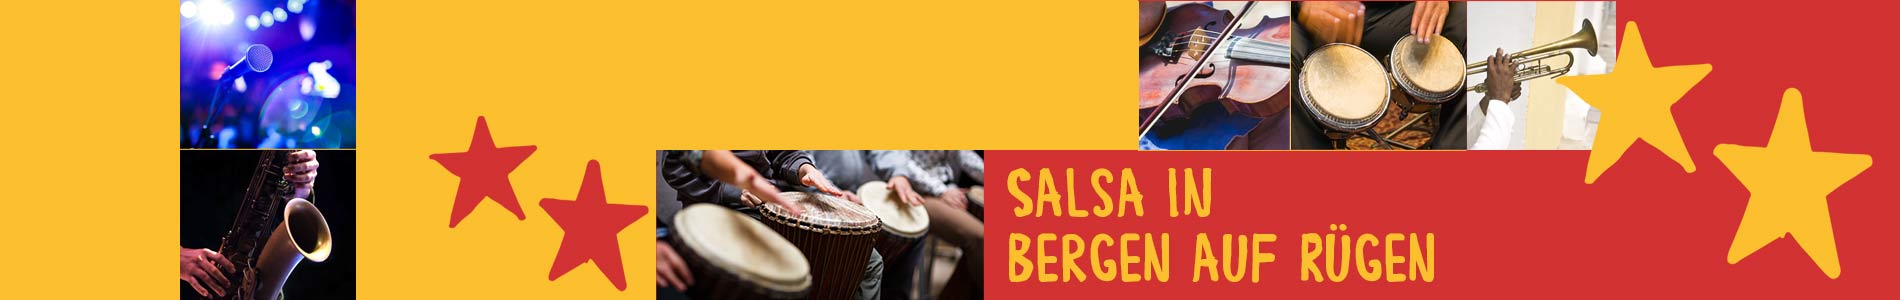 Salsa in Bergen – Salsa lernen und tanzen, Tanzkurse, Partys, Veranstaltungen